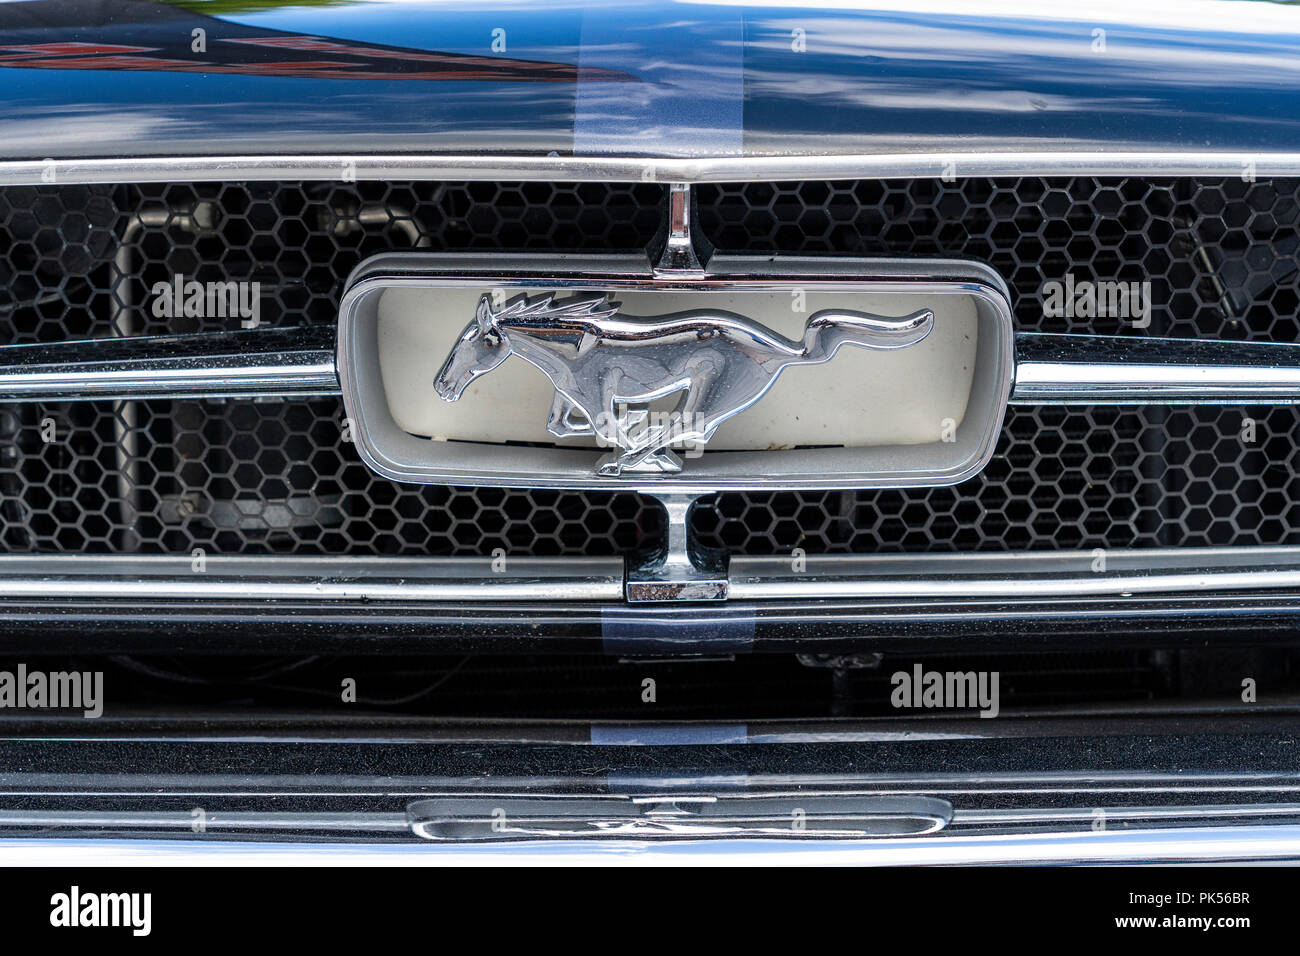 Ford Mustang Pferd Logo auf dem Kühlergrill des klassischen amerikanischen  Auto Stockfotografie - Alamy